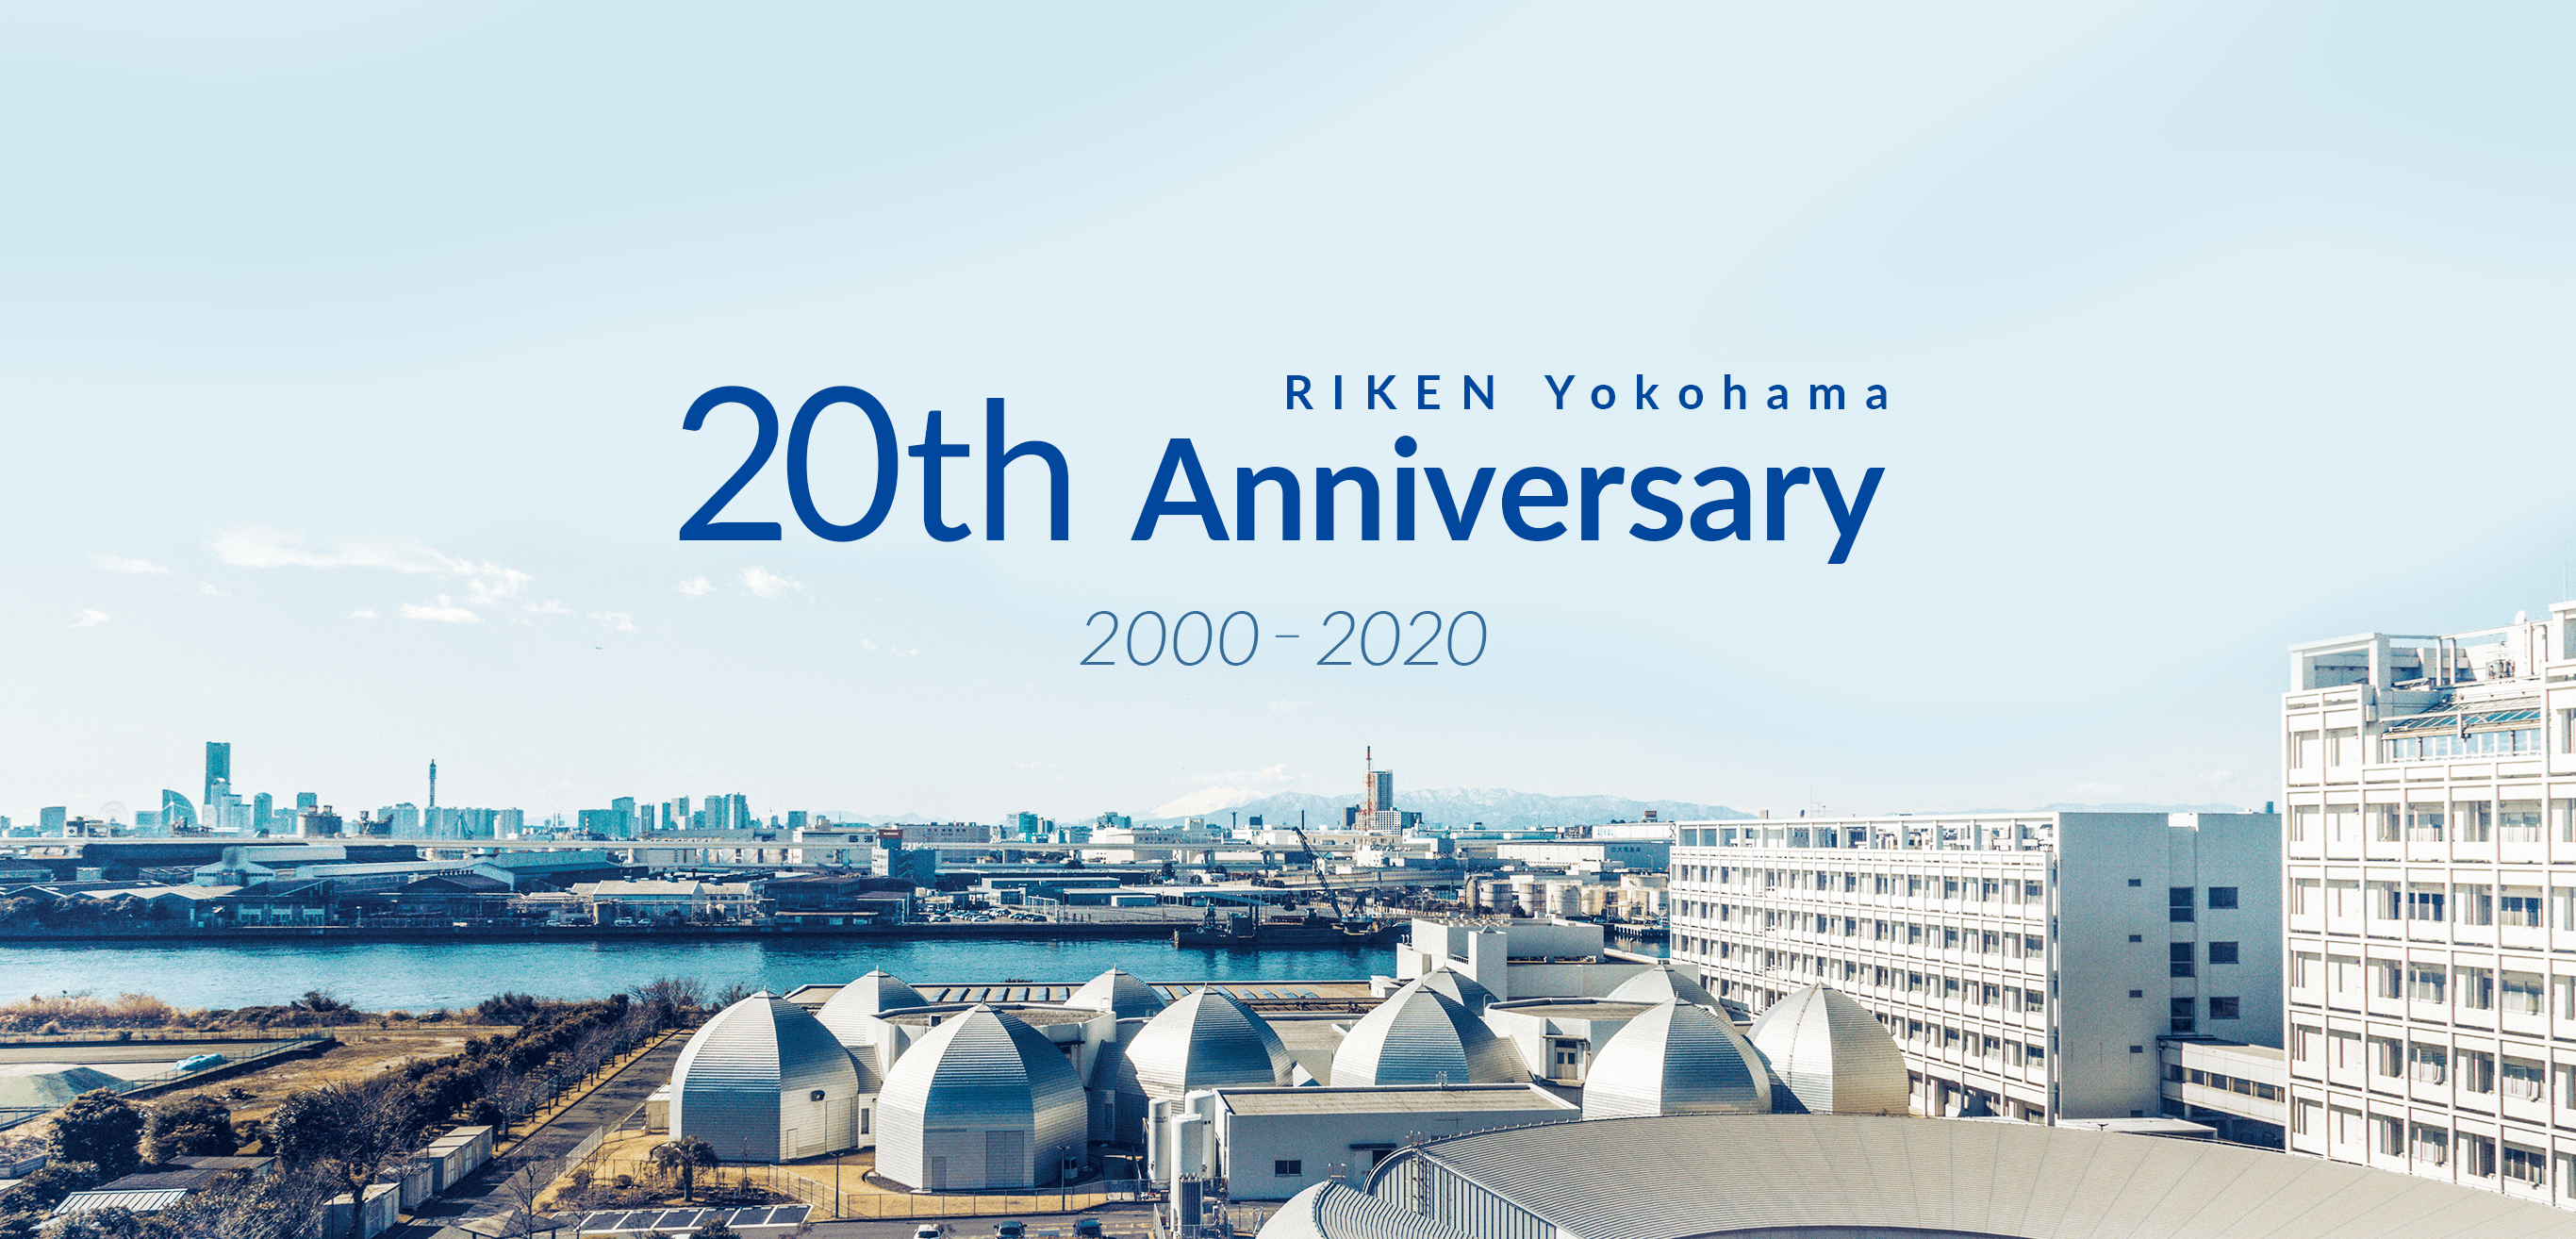 RIKEN Yokohama 20th Anniversary 2000 - 2020